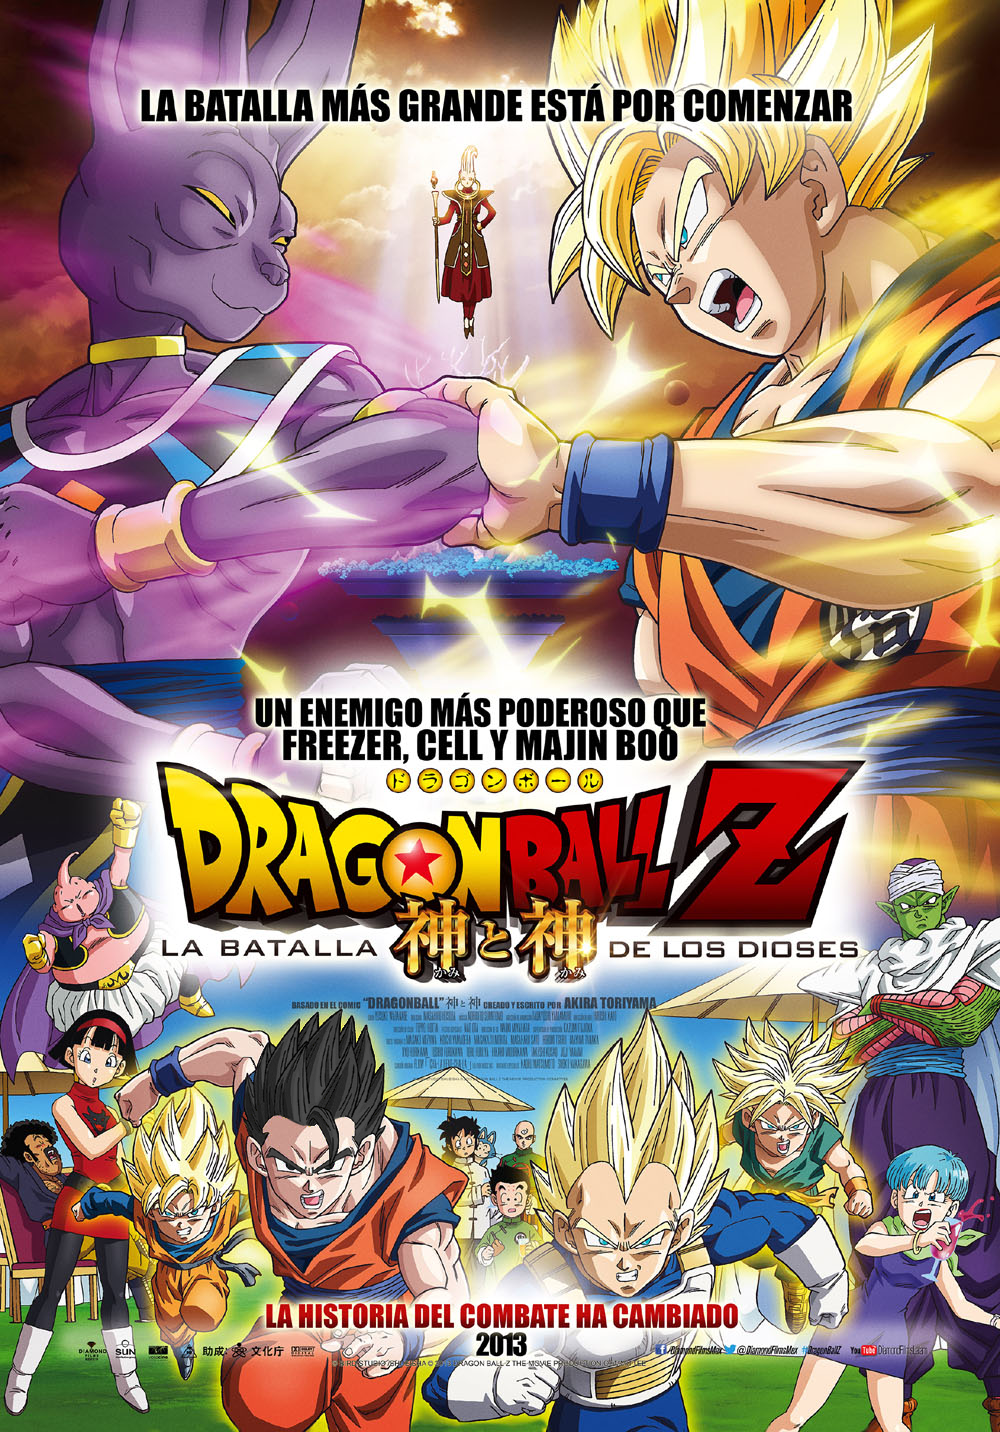 imagenes de goku la saga de los dioses - Dragon Ball Z La Nueva Saga De Los Dioses Facebook